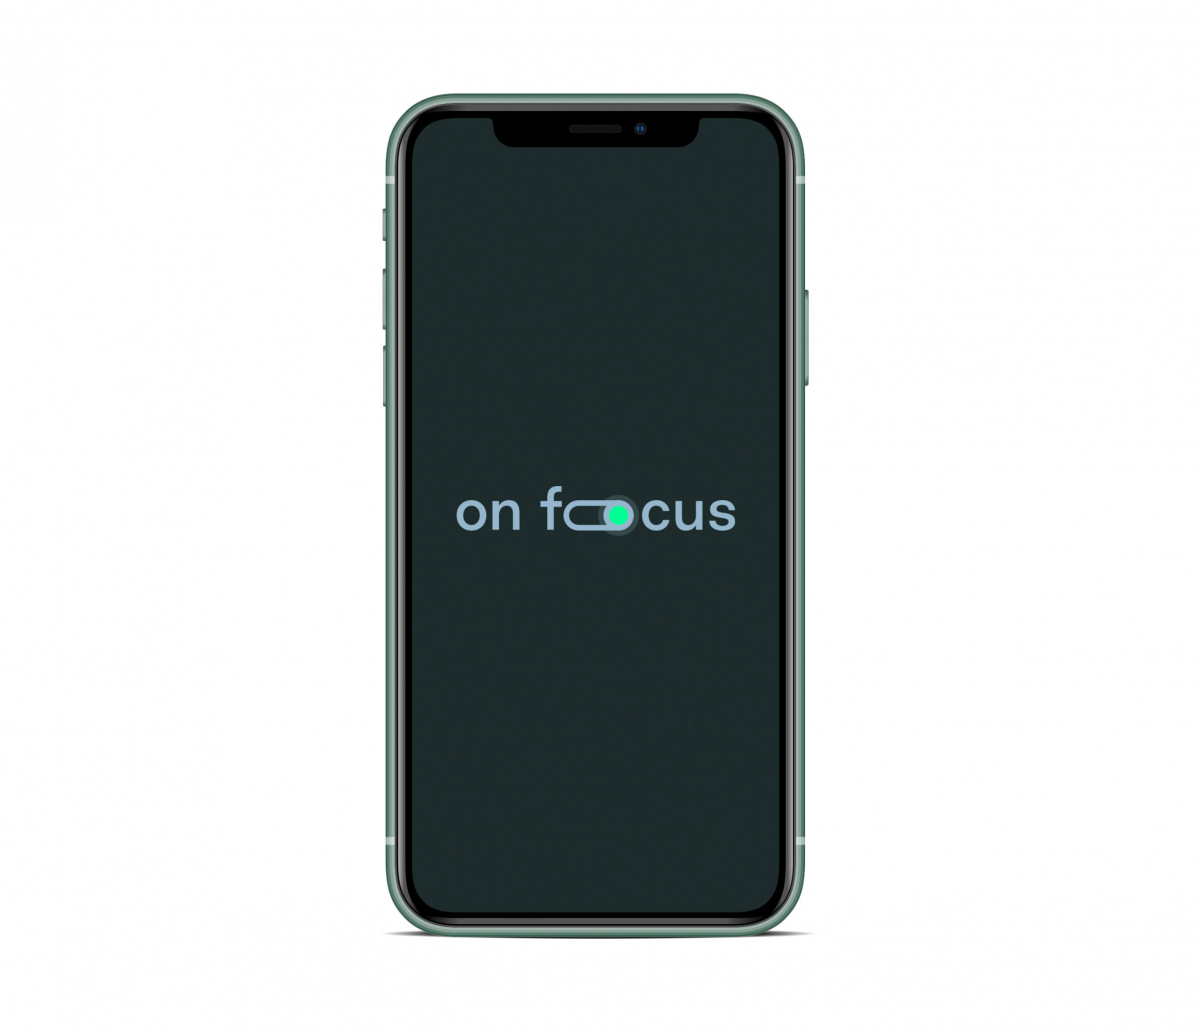 on-foocus App Mockup